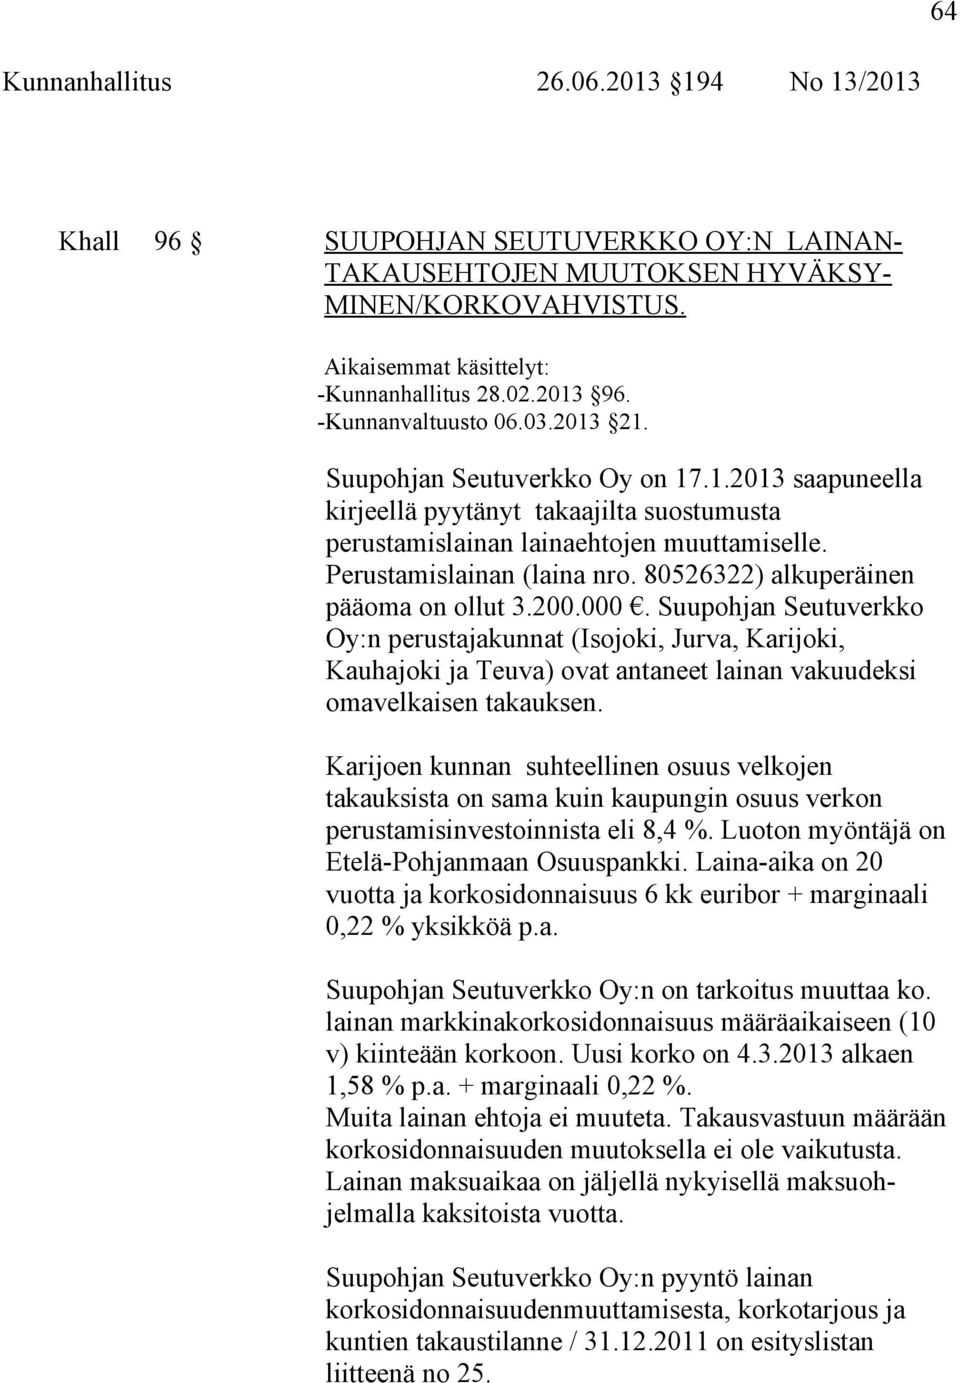 80526322) alkuperäinen pääoma on ollut 3.200.000. Suupohjan Seutuverkko Oy:n perustajakunnat (Isojoki, Jurva, Karijoki, Kauhajoki ja Teuva) ovat antaneet lainan vakuudeksi omavelkaisen takauksen.